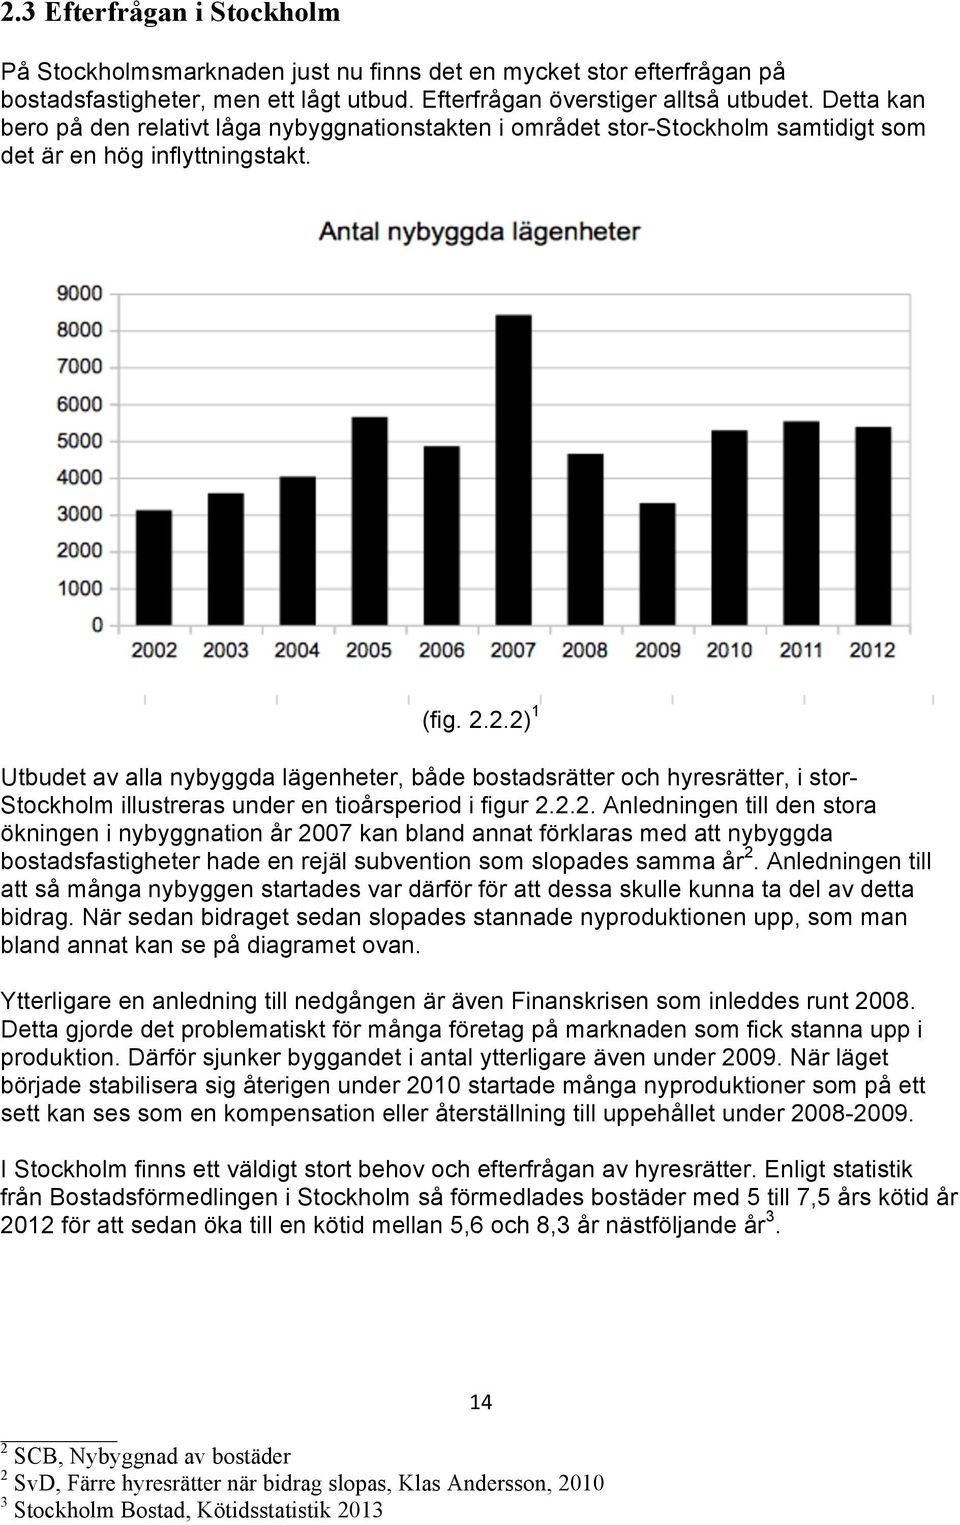 2.2) 1 Utbudet av alla nybyggda lägenheter, både bostadsrätter och hyresrätter, i stor- Stockholm illustreras under en tioårsperiod i figur 2.2.2. Anledningen till den stora ökningen i nybyggnation år 2007 kan bland annat förklaras med att nybyggda bostadsfastigheter hade en rejäl subvention som slopades samma år 2.